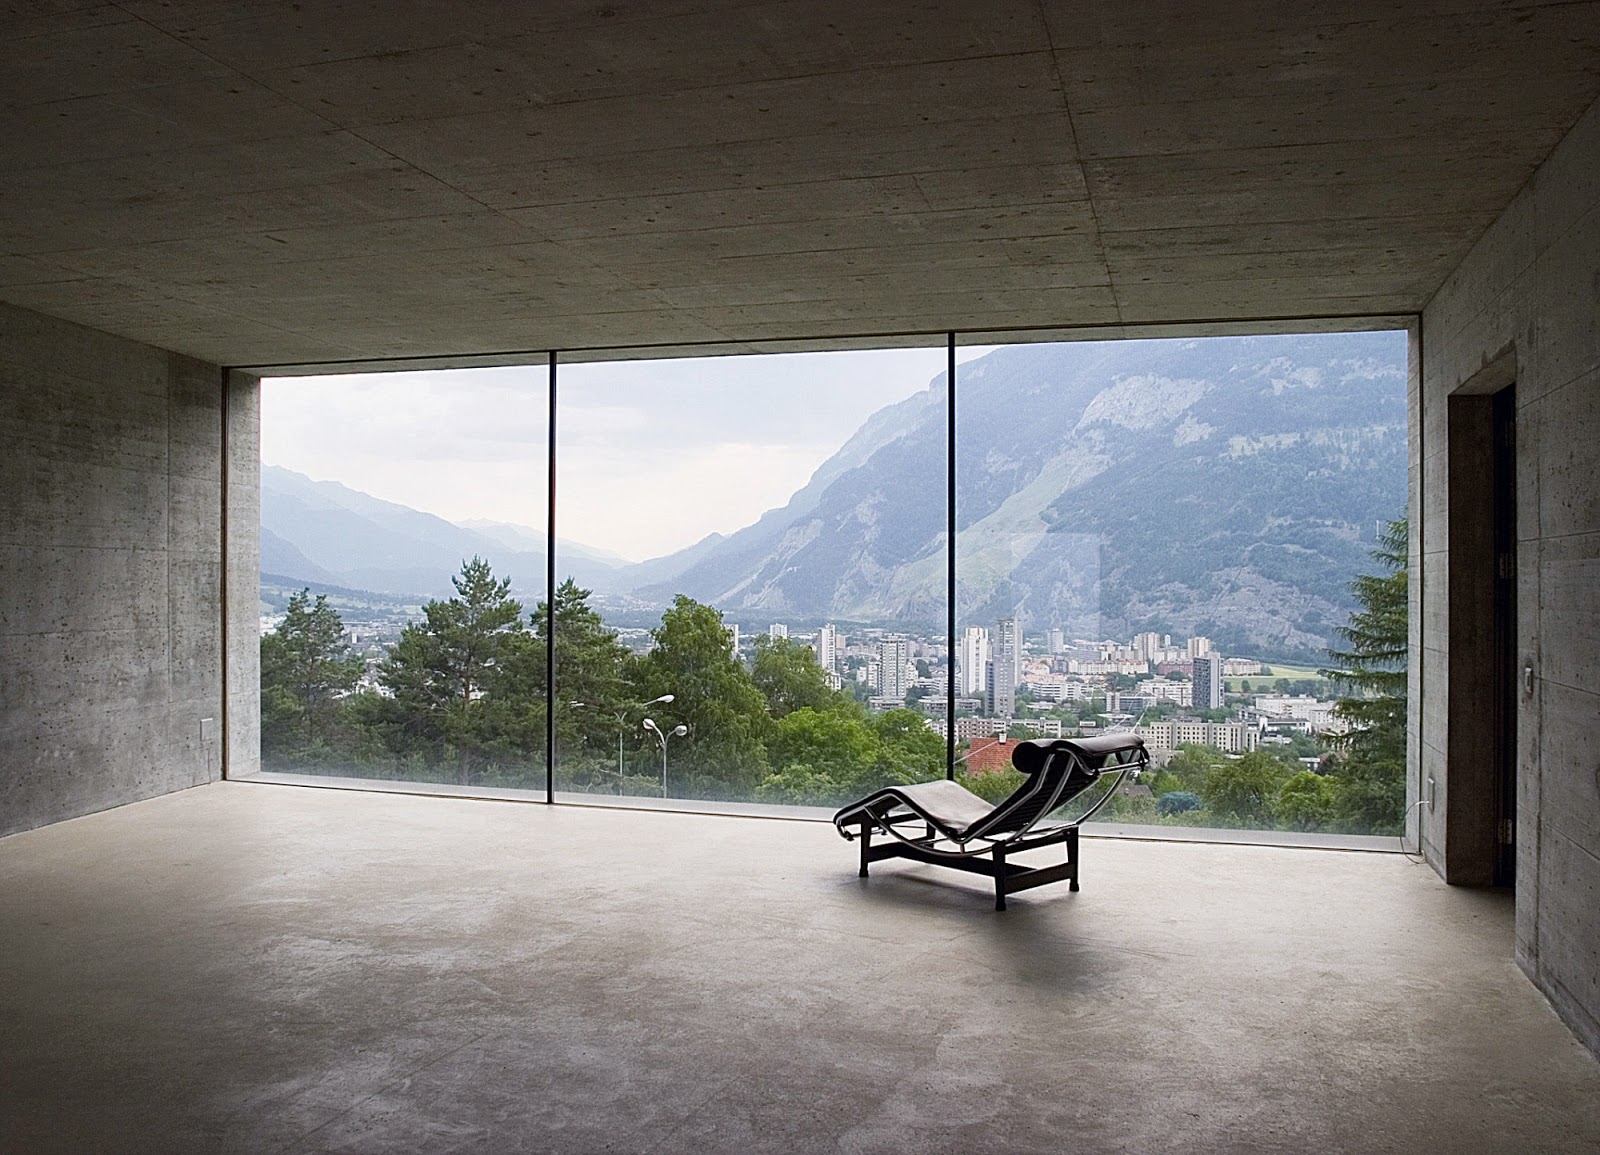 ideasgn × blogspot: House in Chur by Patrick Gartmann